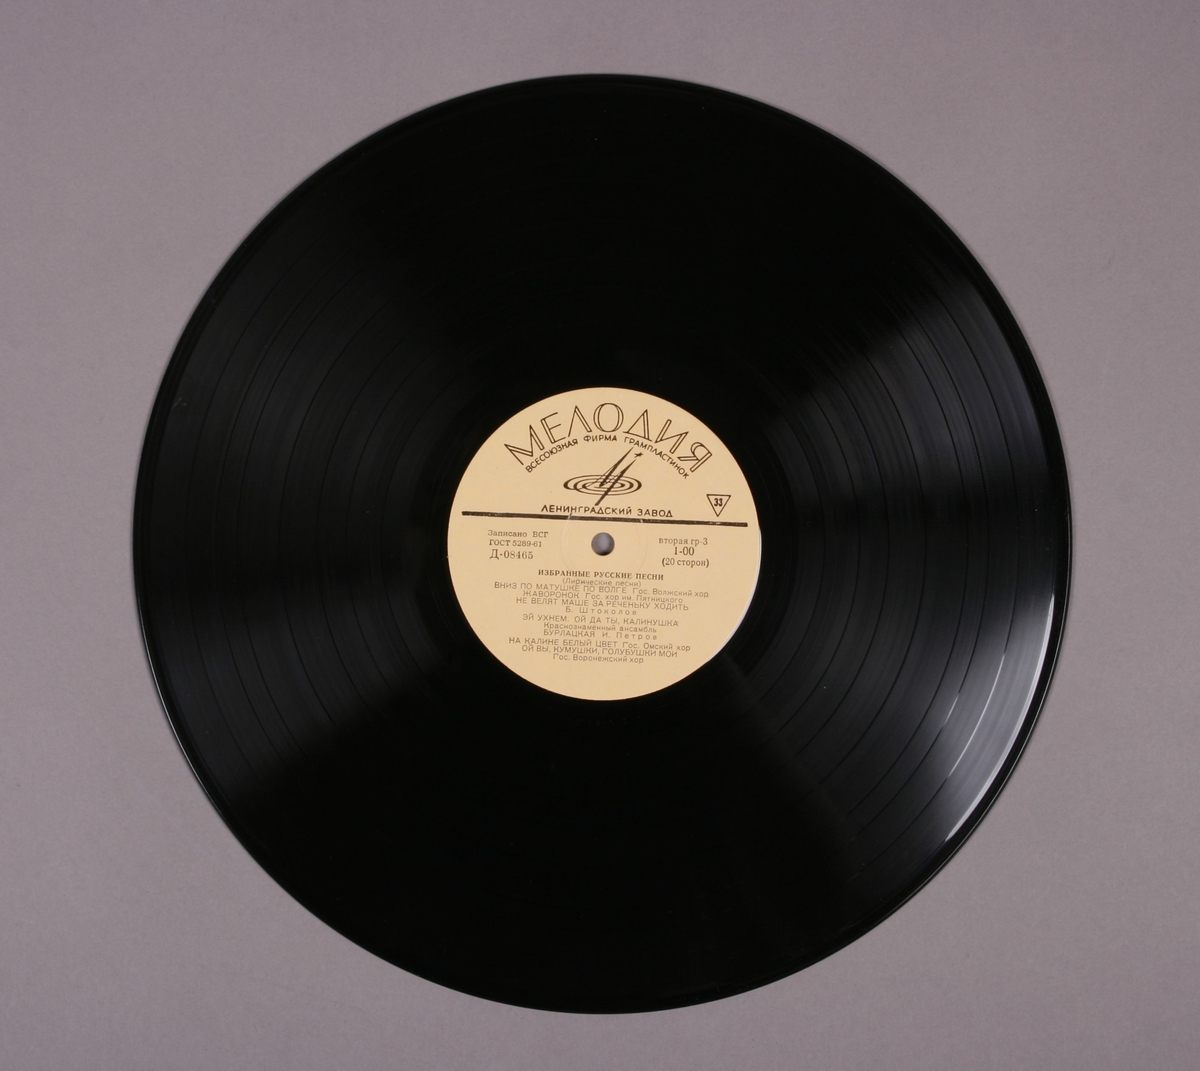 Grammofonplate i svart vinyl og plateomslag i papir. Plateomslaget har påskriftene "A side ok" og "367". Plata ligger i en plastlomme.